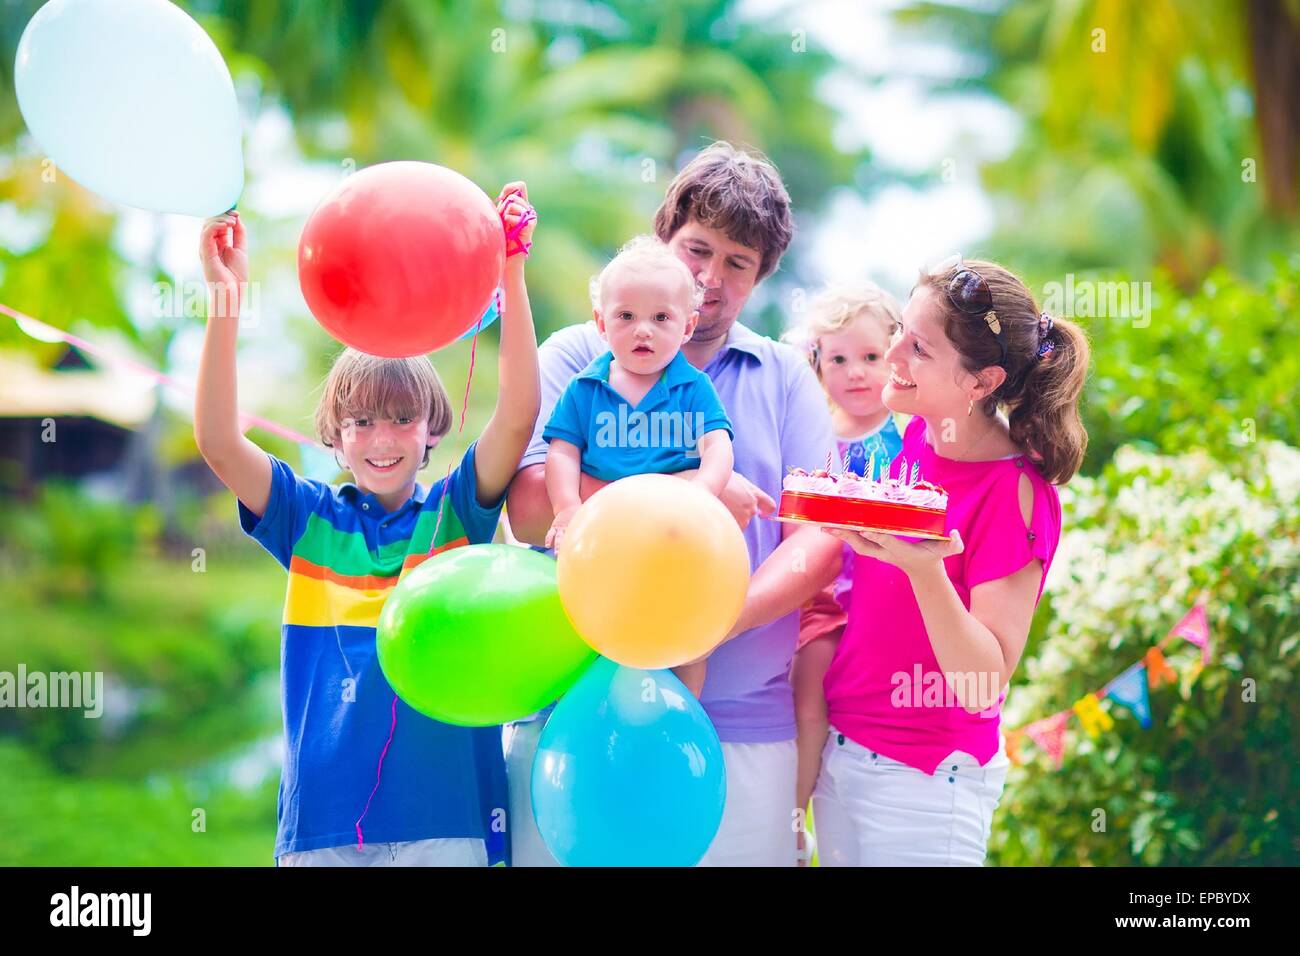 Die große glückliche Familie feiern junge Eltern mit drei Kindern, Teenager-jungen, kleines Kind Mädchen und Baby feiert Geburtstag Stockfoto